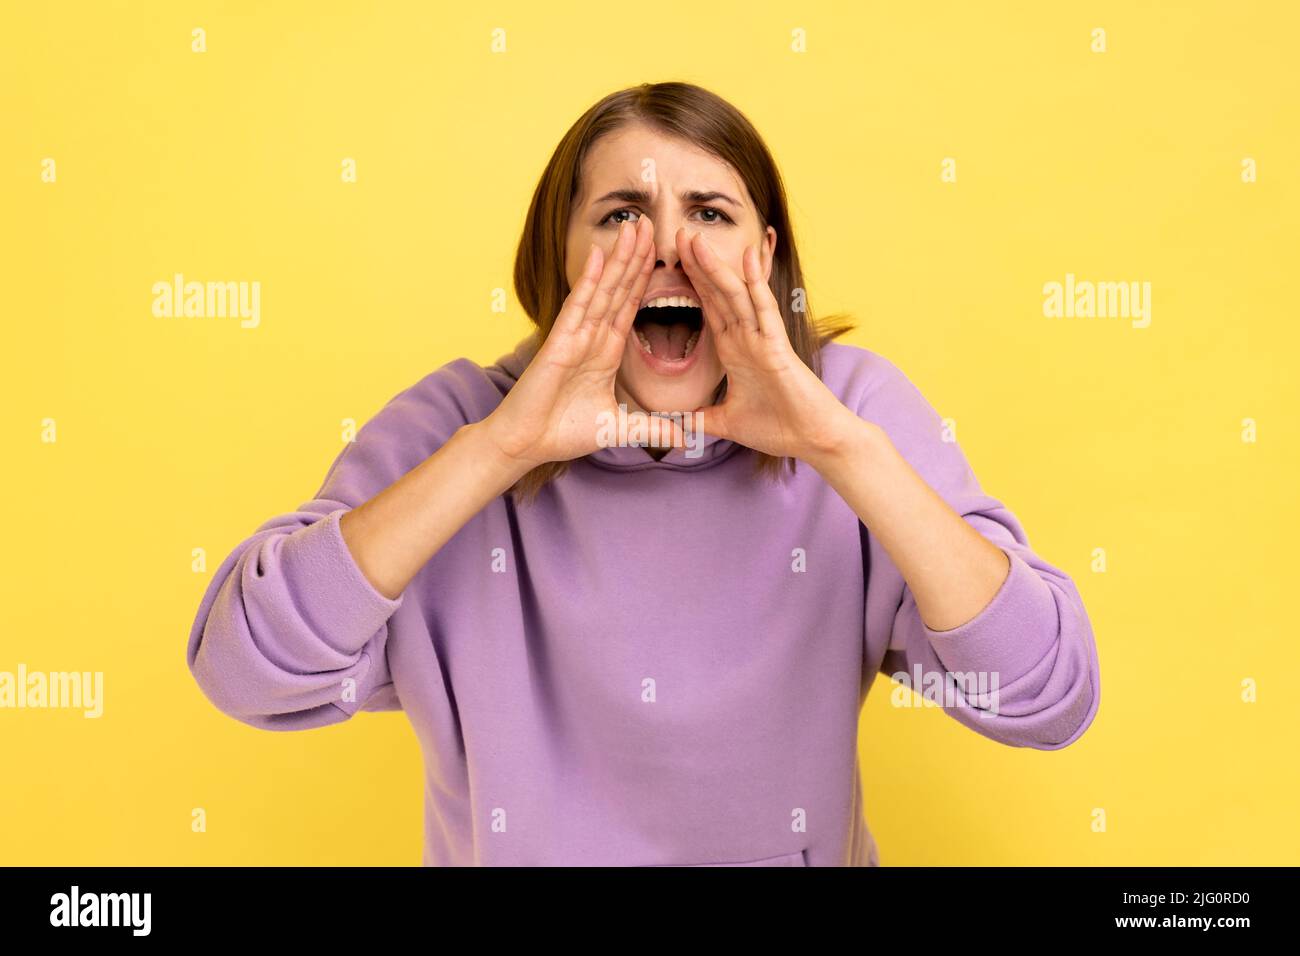 Attention, publicité. Portrait d'une femme hurlant criant sur la vente, annonçant haut et fort message important, portant le pull à capuche violet. Studio d'intérieur isolé sur fond jaune. Banque D'Images